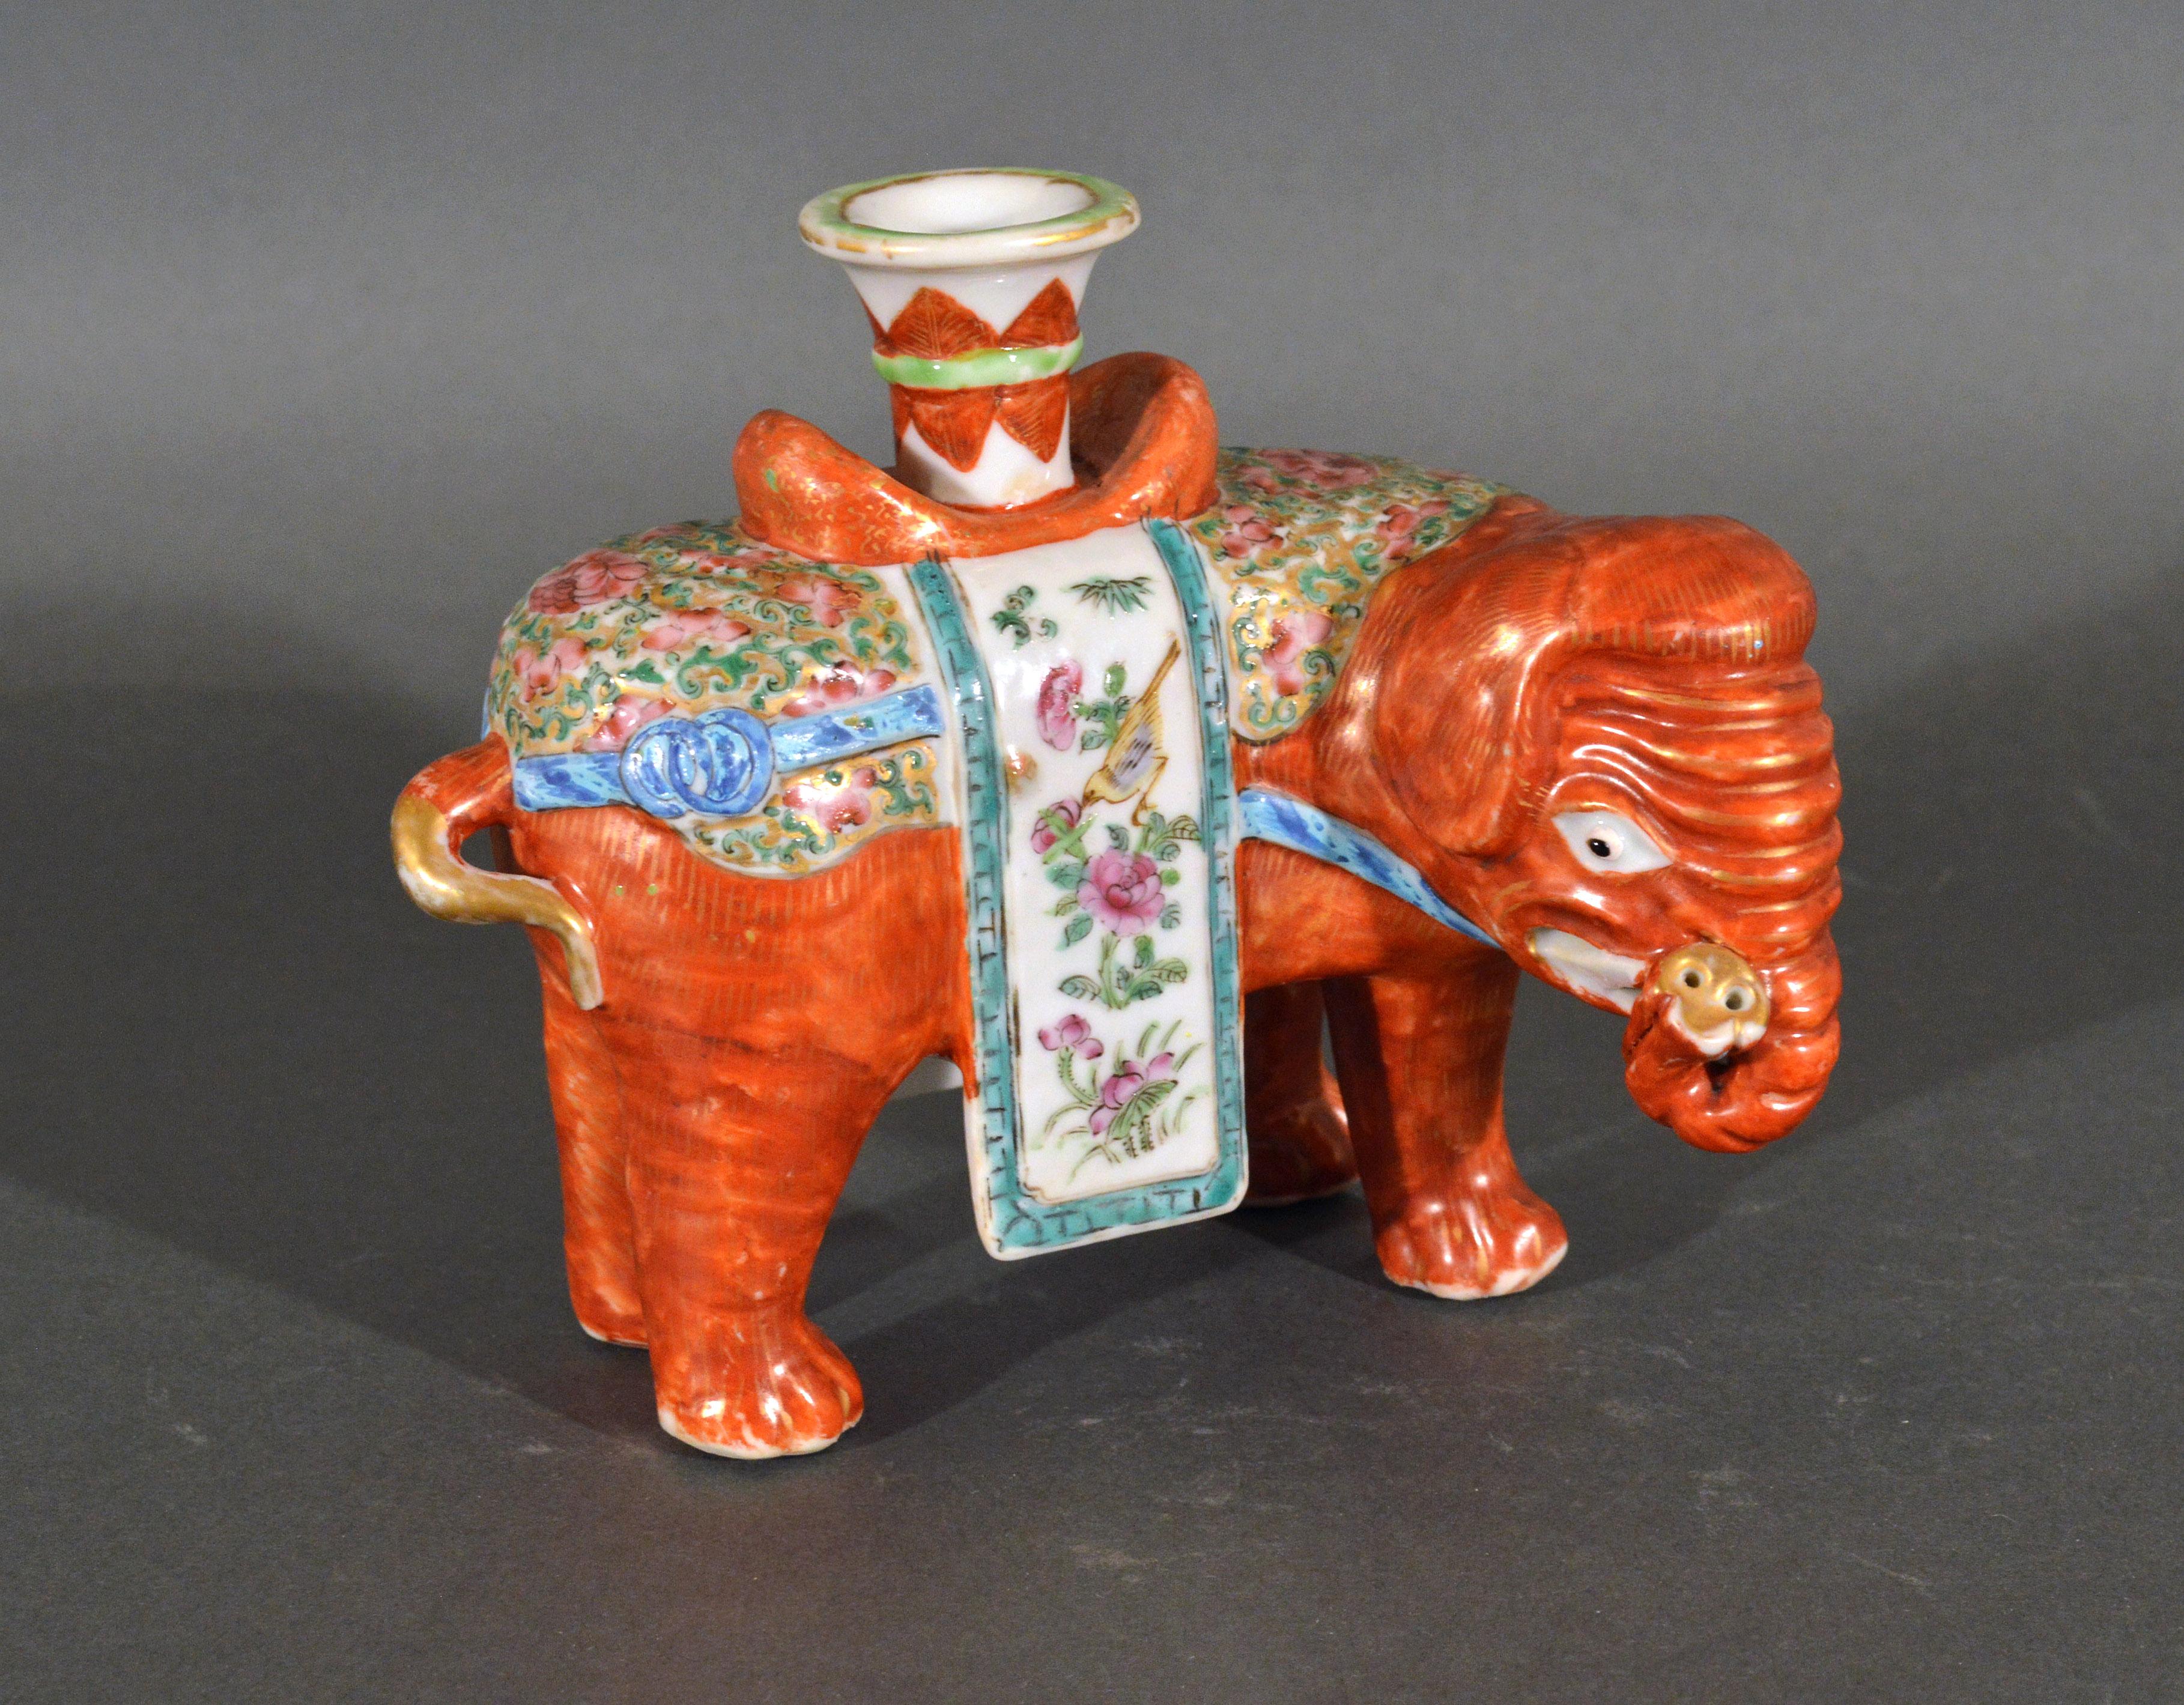 Eléphant en porcelaine d'exportation chinoise canton famille rose modelé comme un chandelier,
vers 1860 

L'éléphant debout en porcelaine d'exportation chinoise, la trompe relevée, est peint en rouge fer avec des décorations dorées et